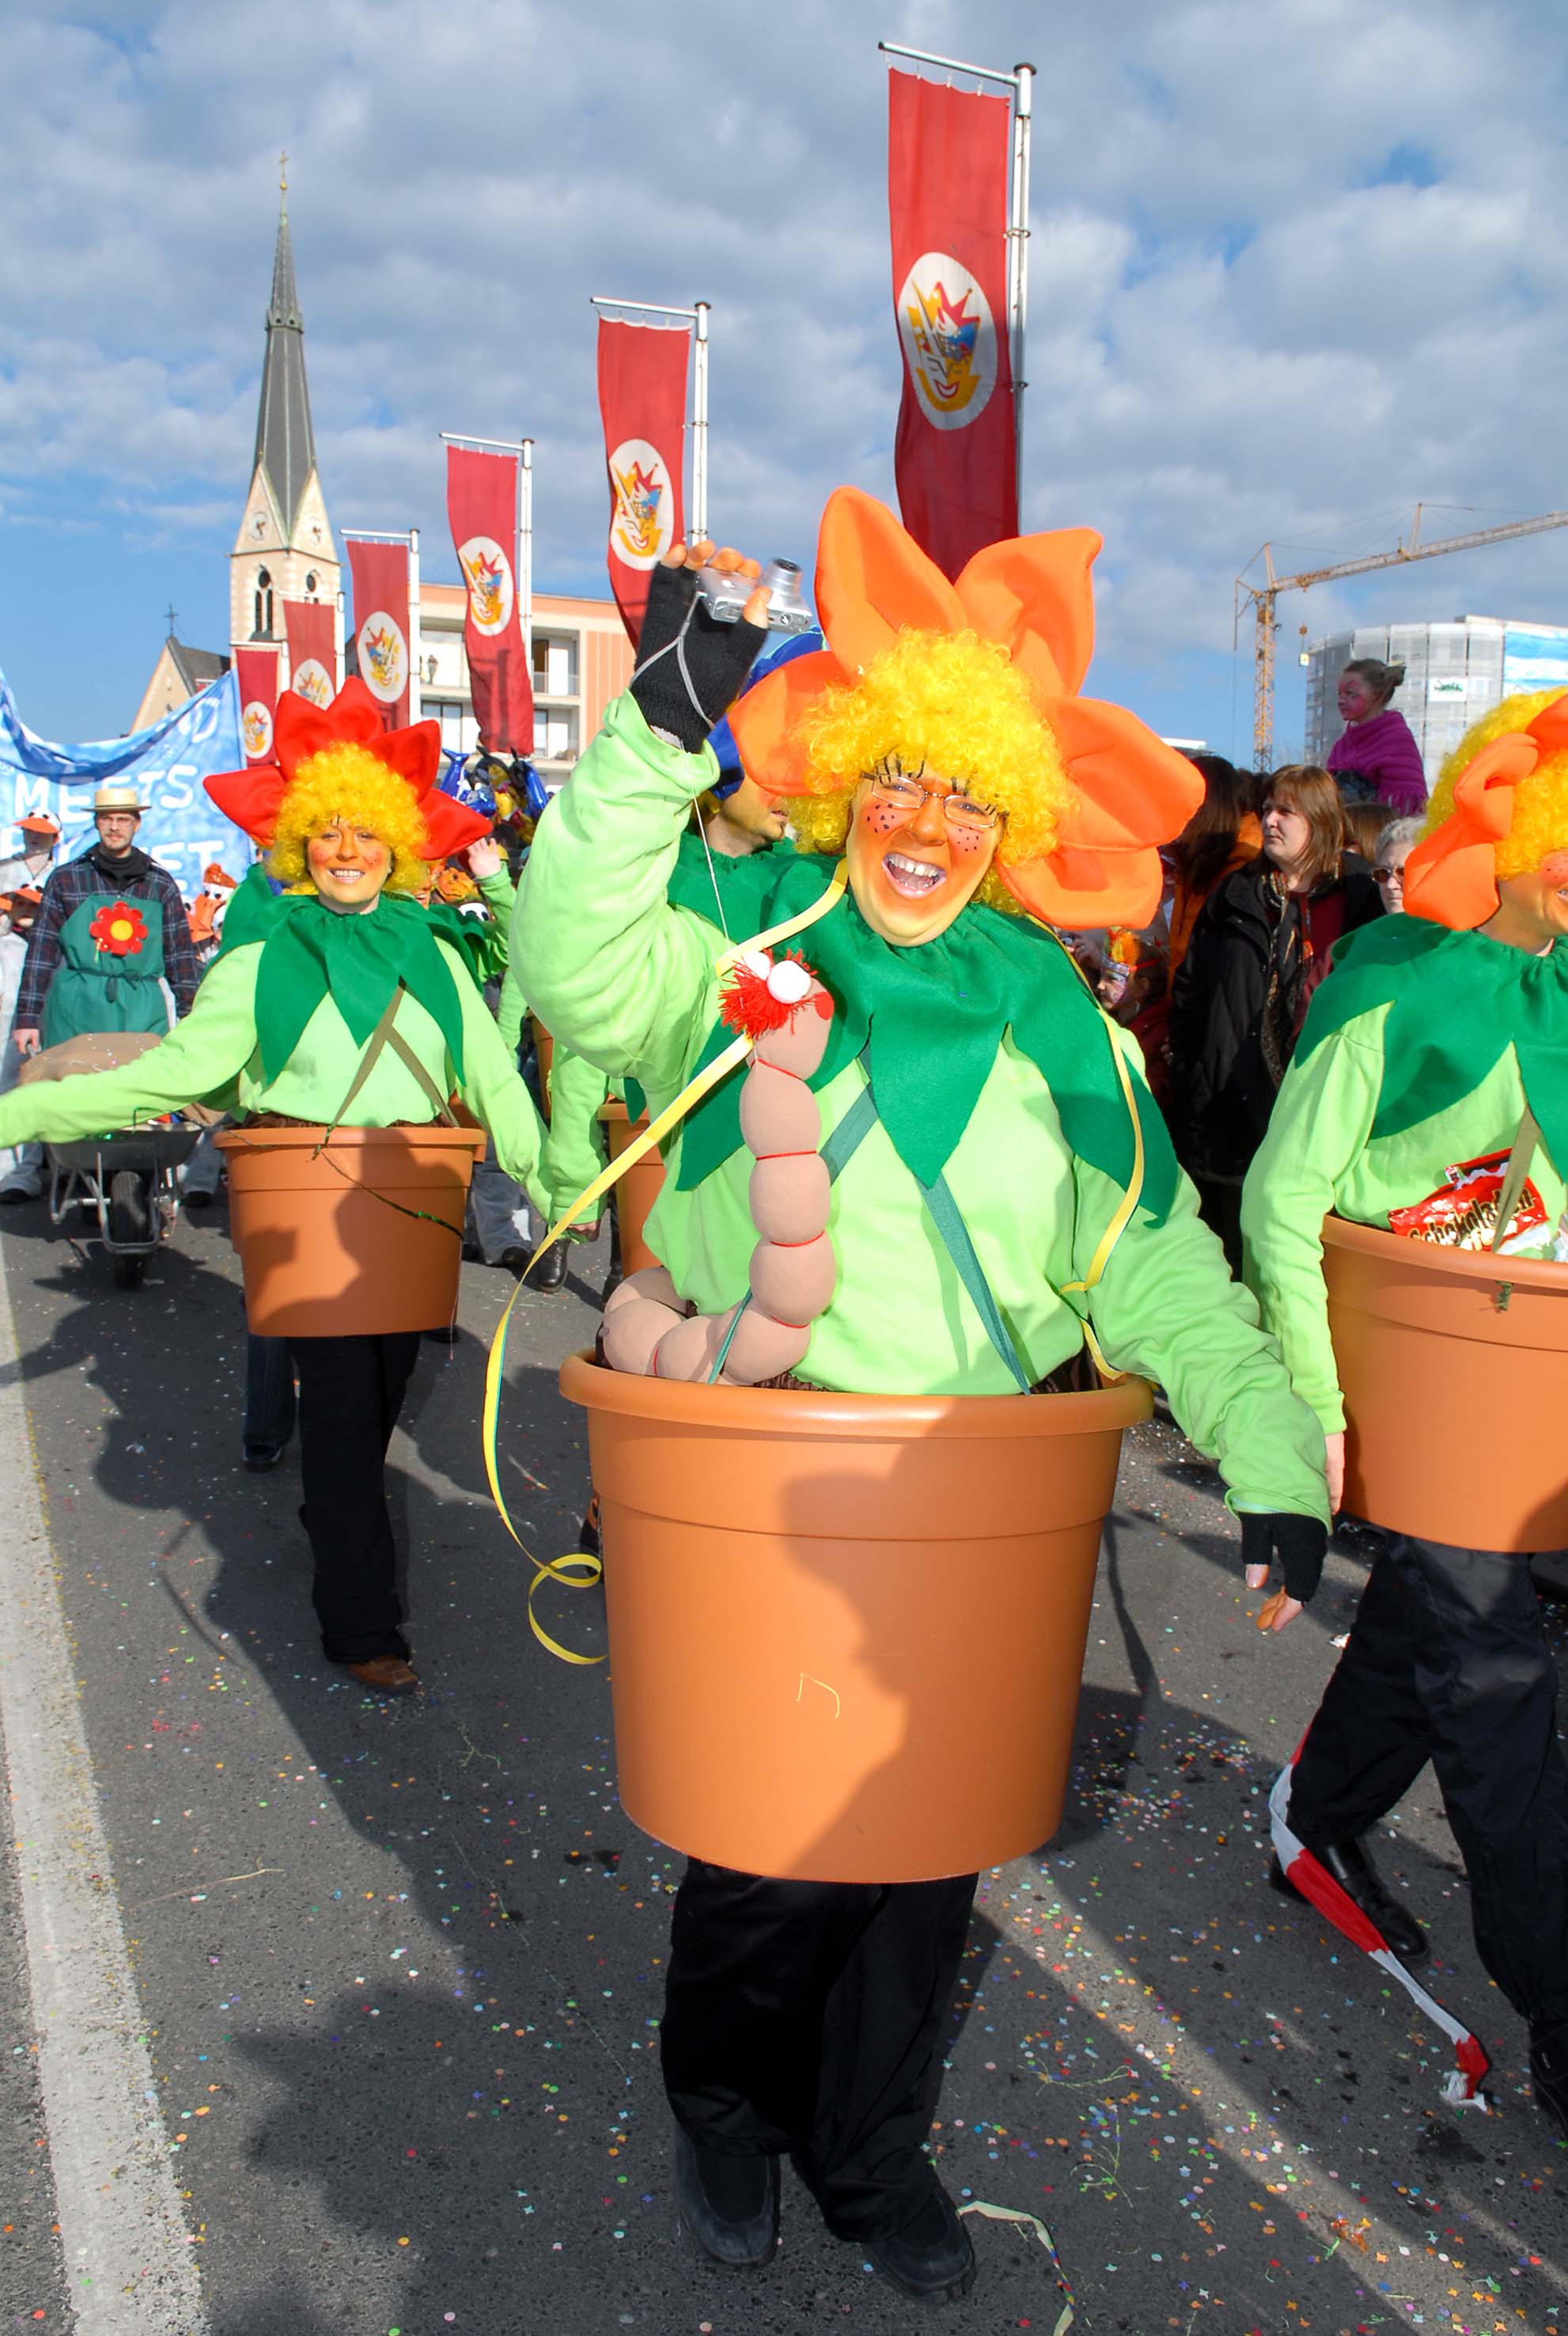 Carnevale 2013 a Villach: sfilate di maschere, spettacoli e prodotti enogastronomici